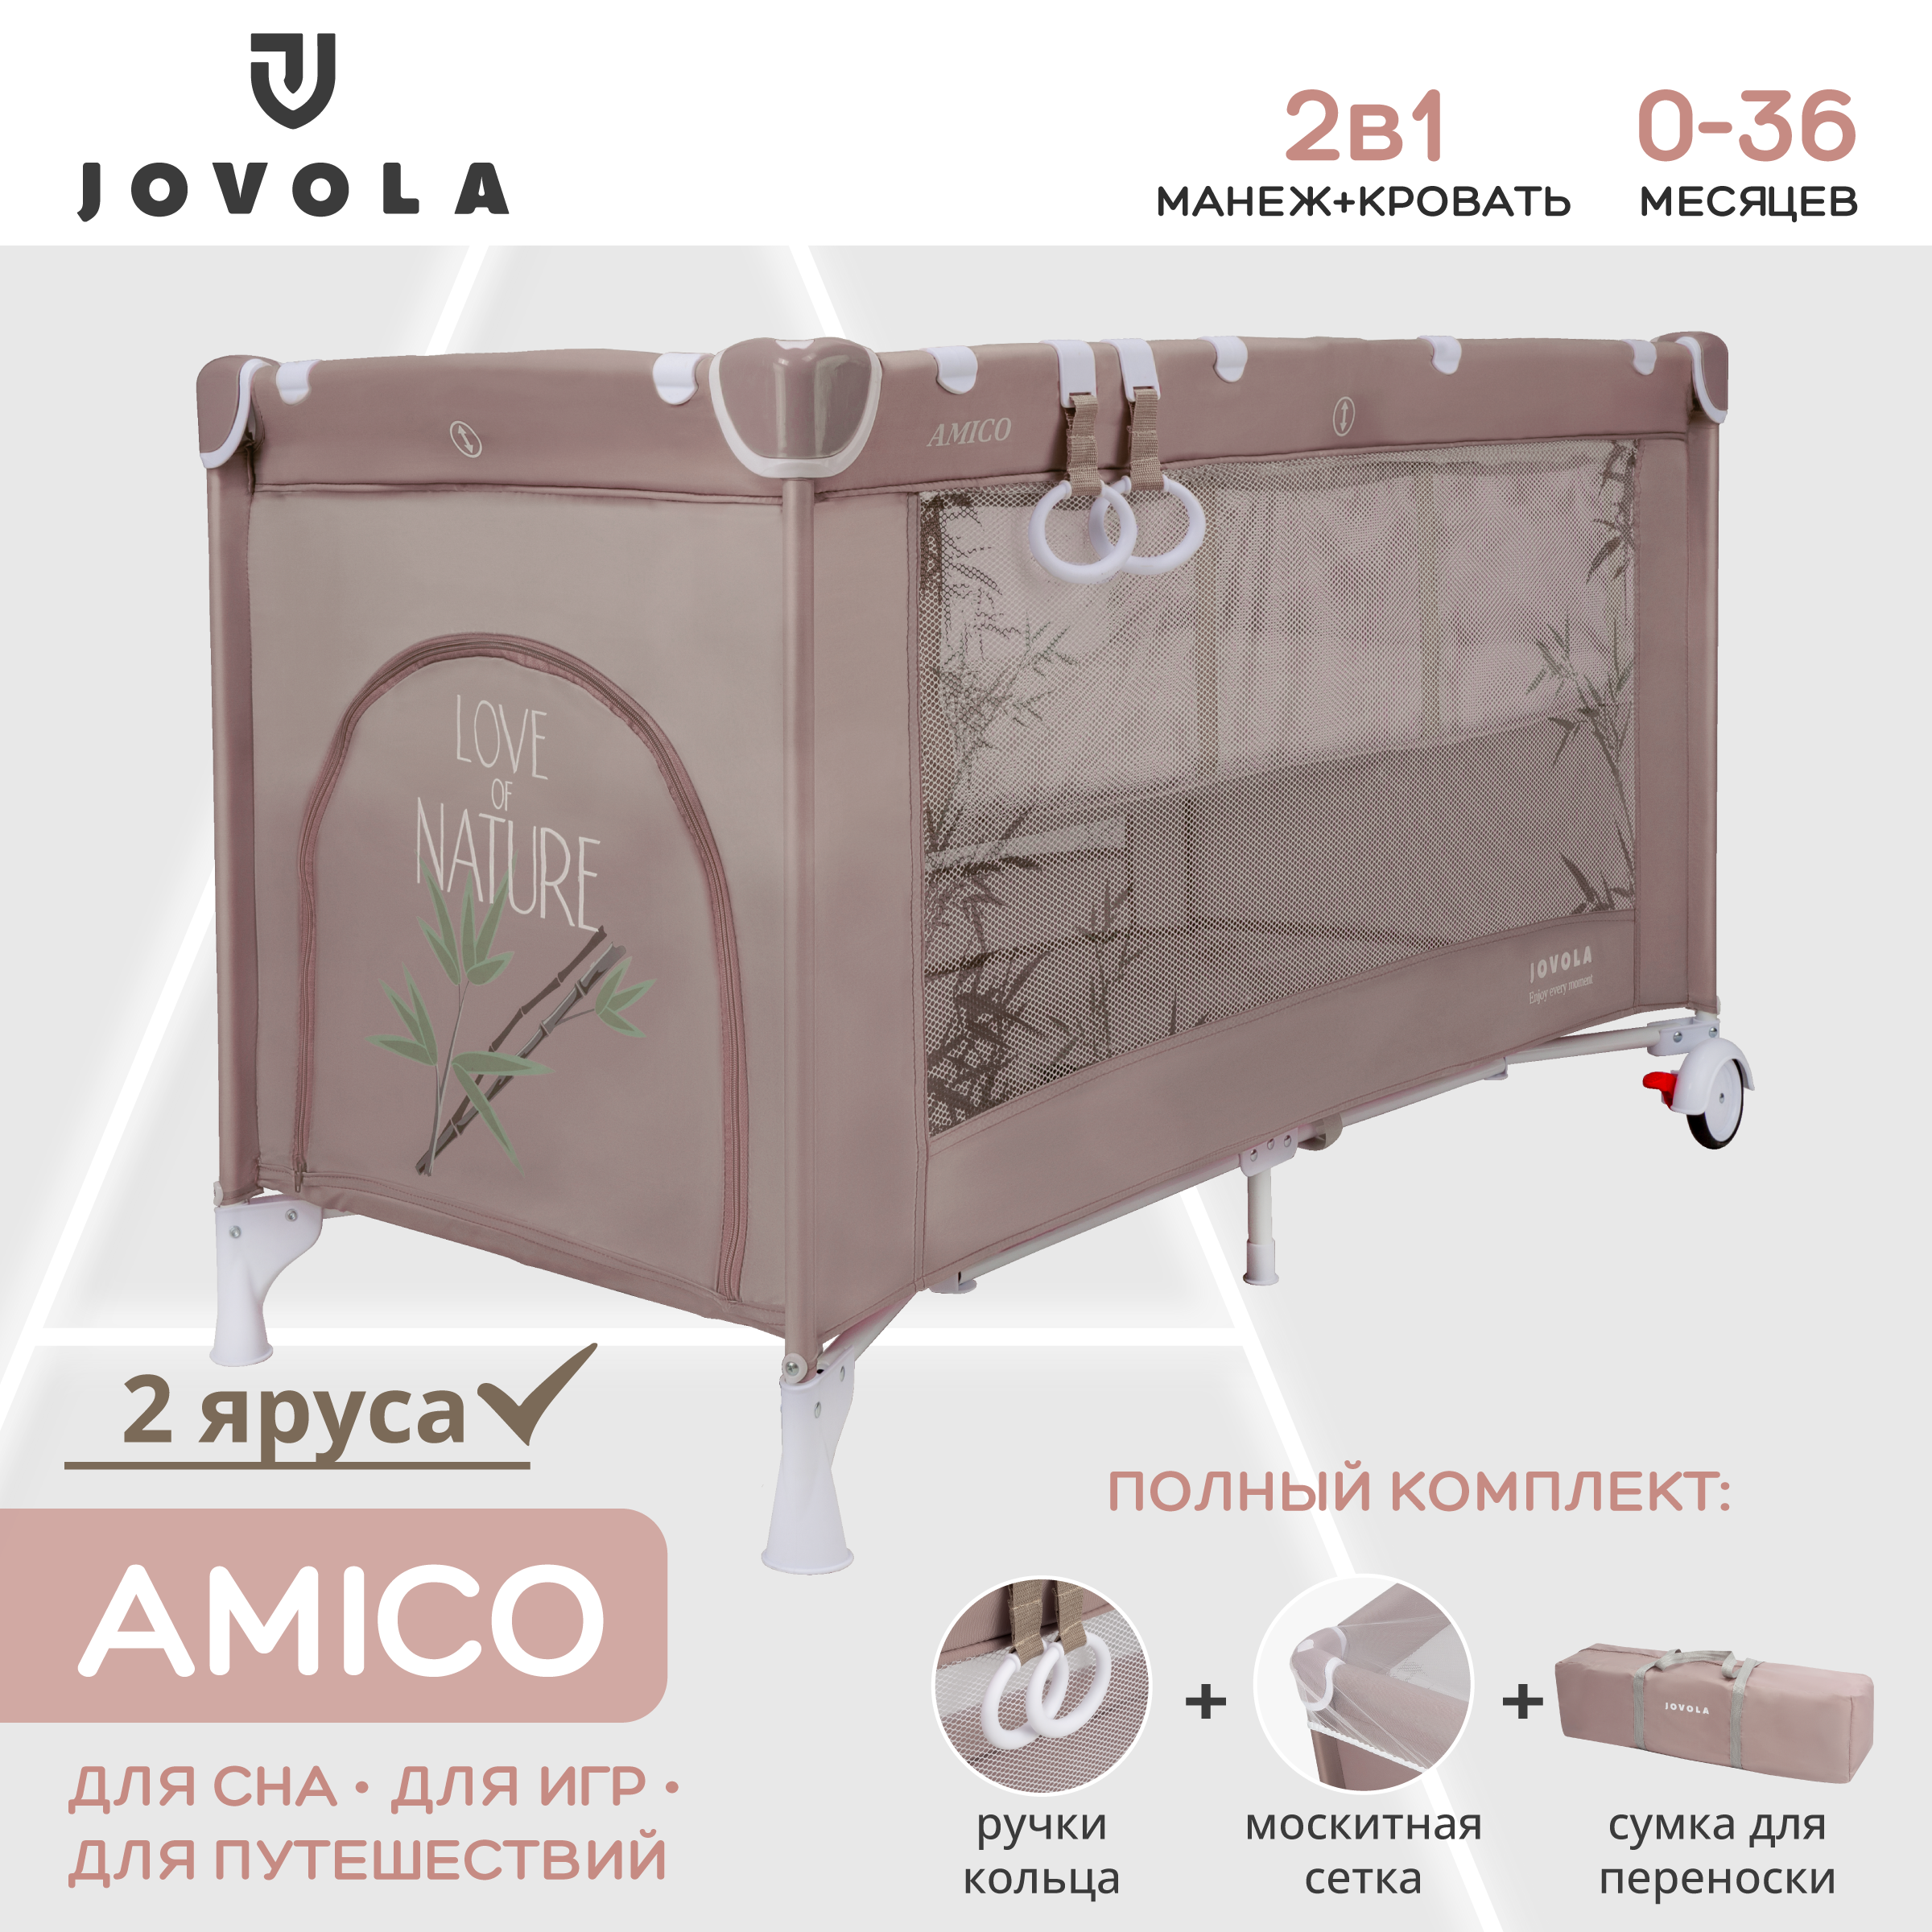 Манеж кровать детский Indigo JOVOLA AMICO складной 2 уровня мокко бамбук комплект изогнутых фиксированных обрезиненных штанг 5 шт от 10 до 20кг hasttings digger hd51g2b 10 2